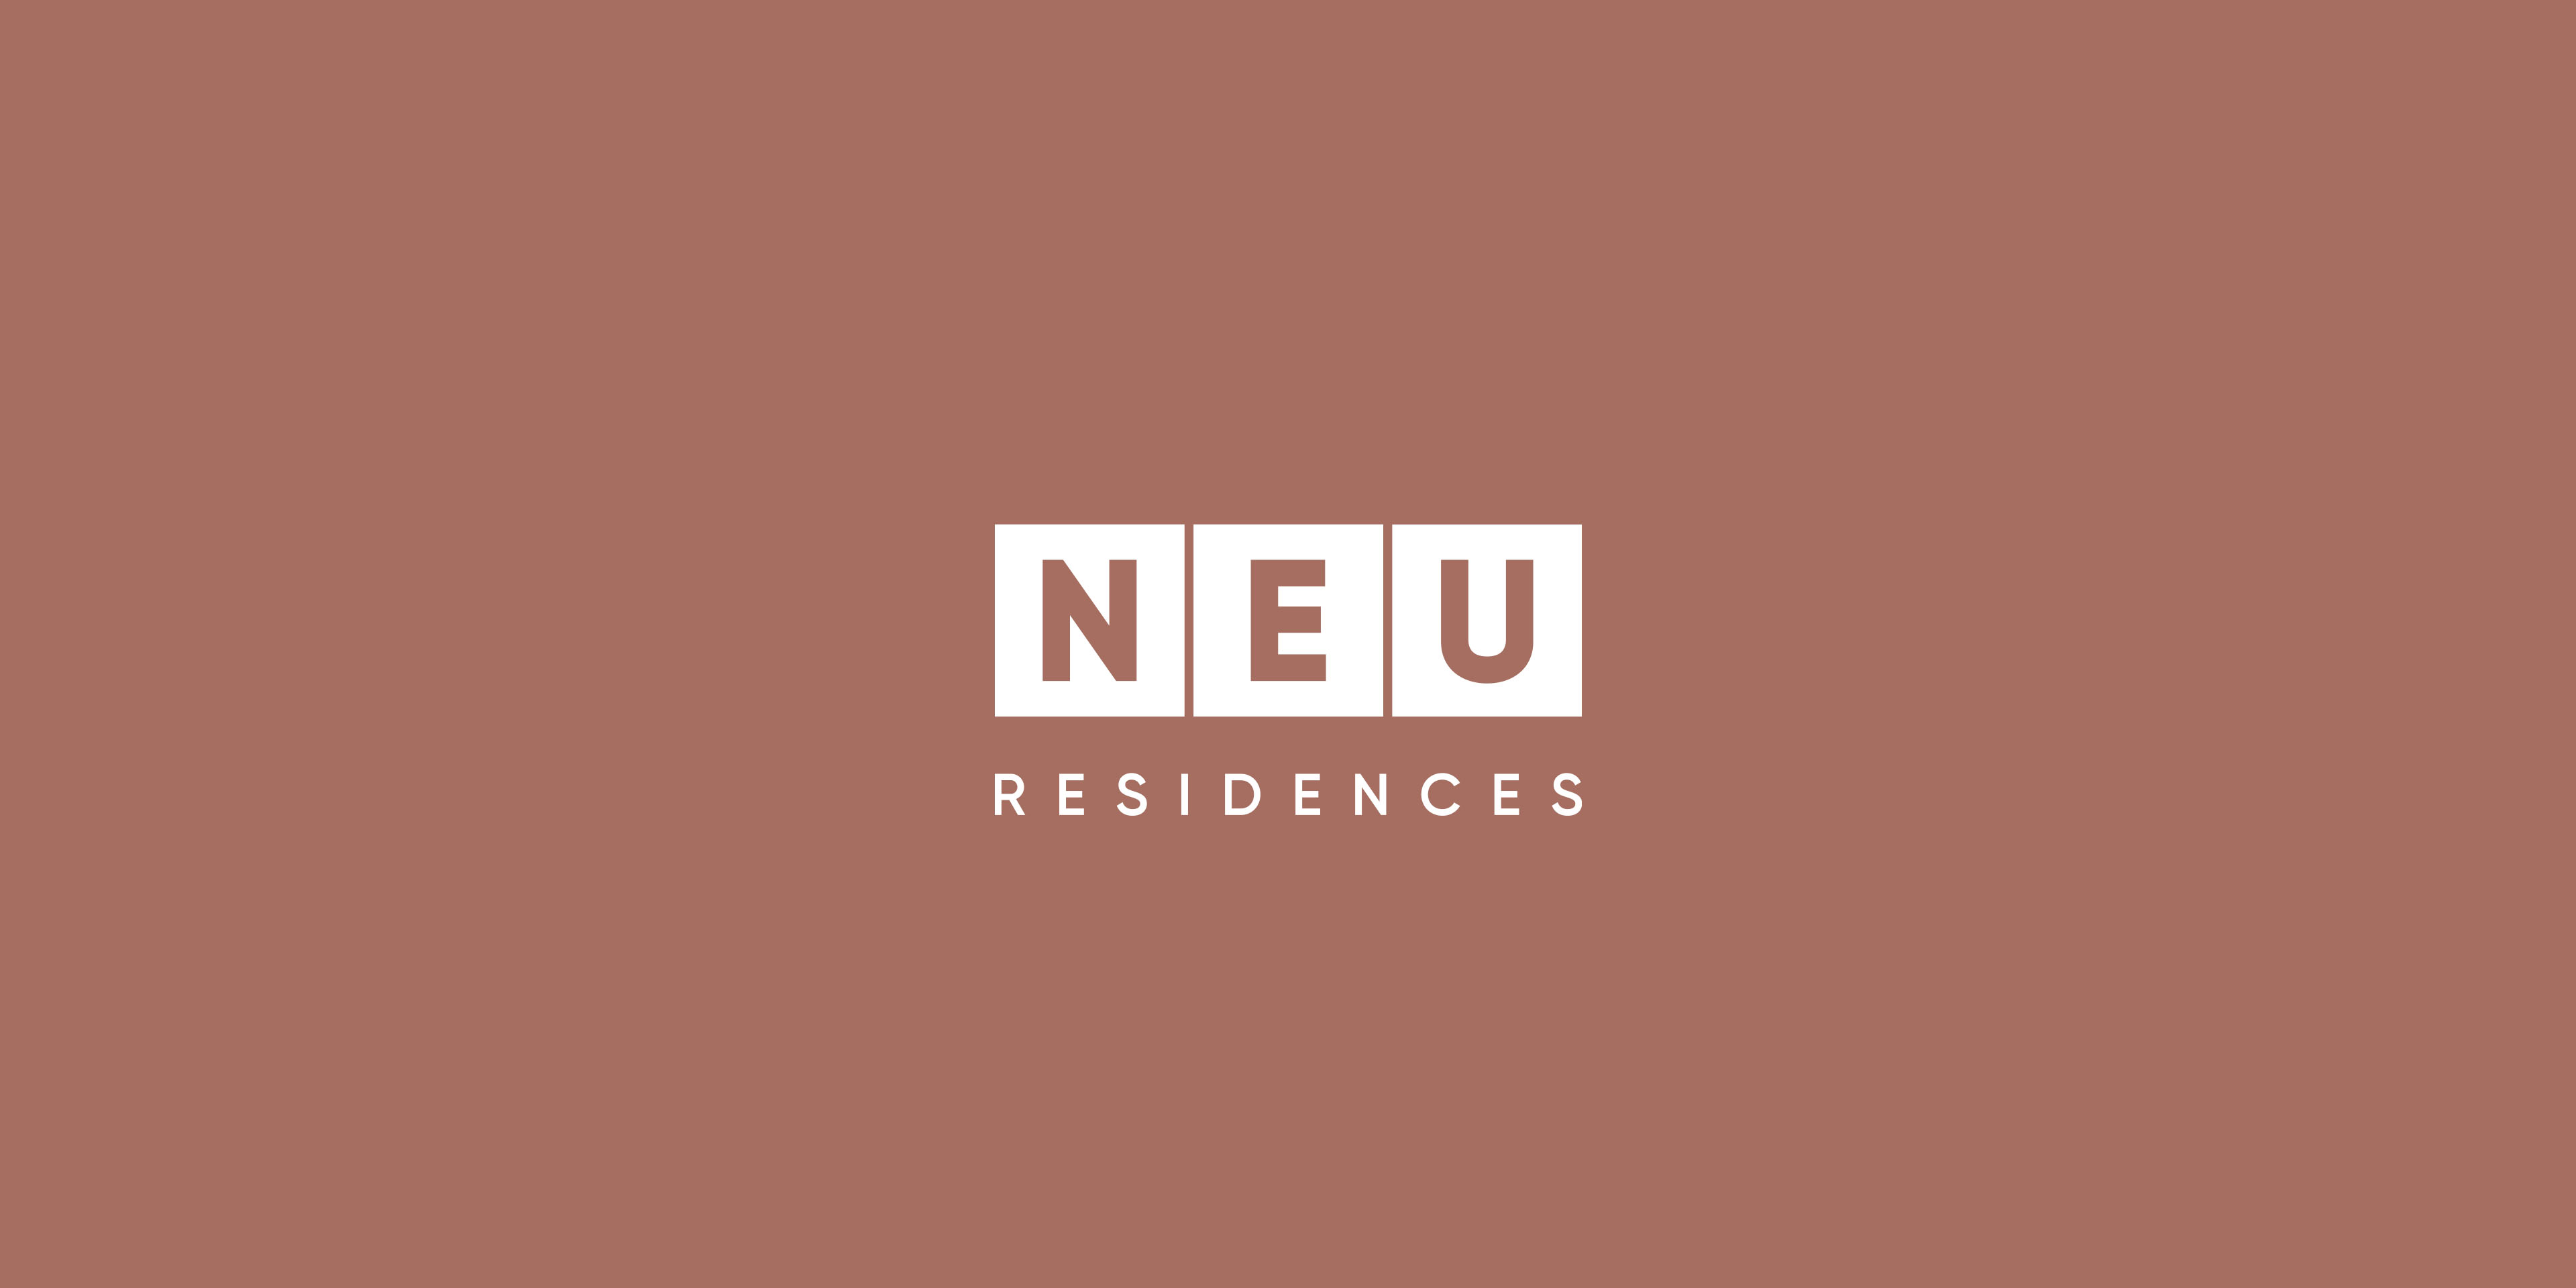 Neu Residences 01v1 Neu logo 3840x1920